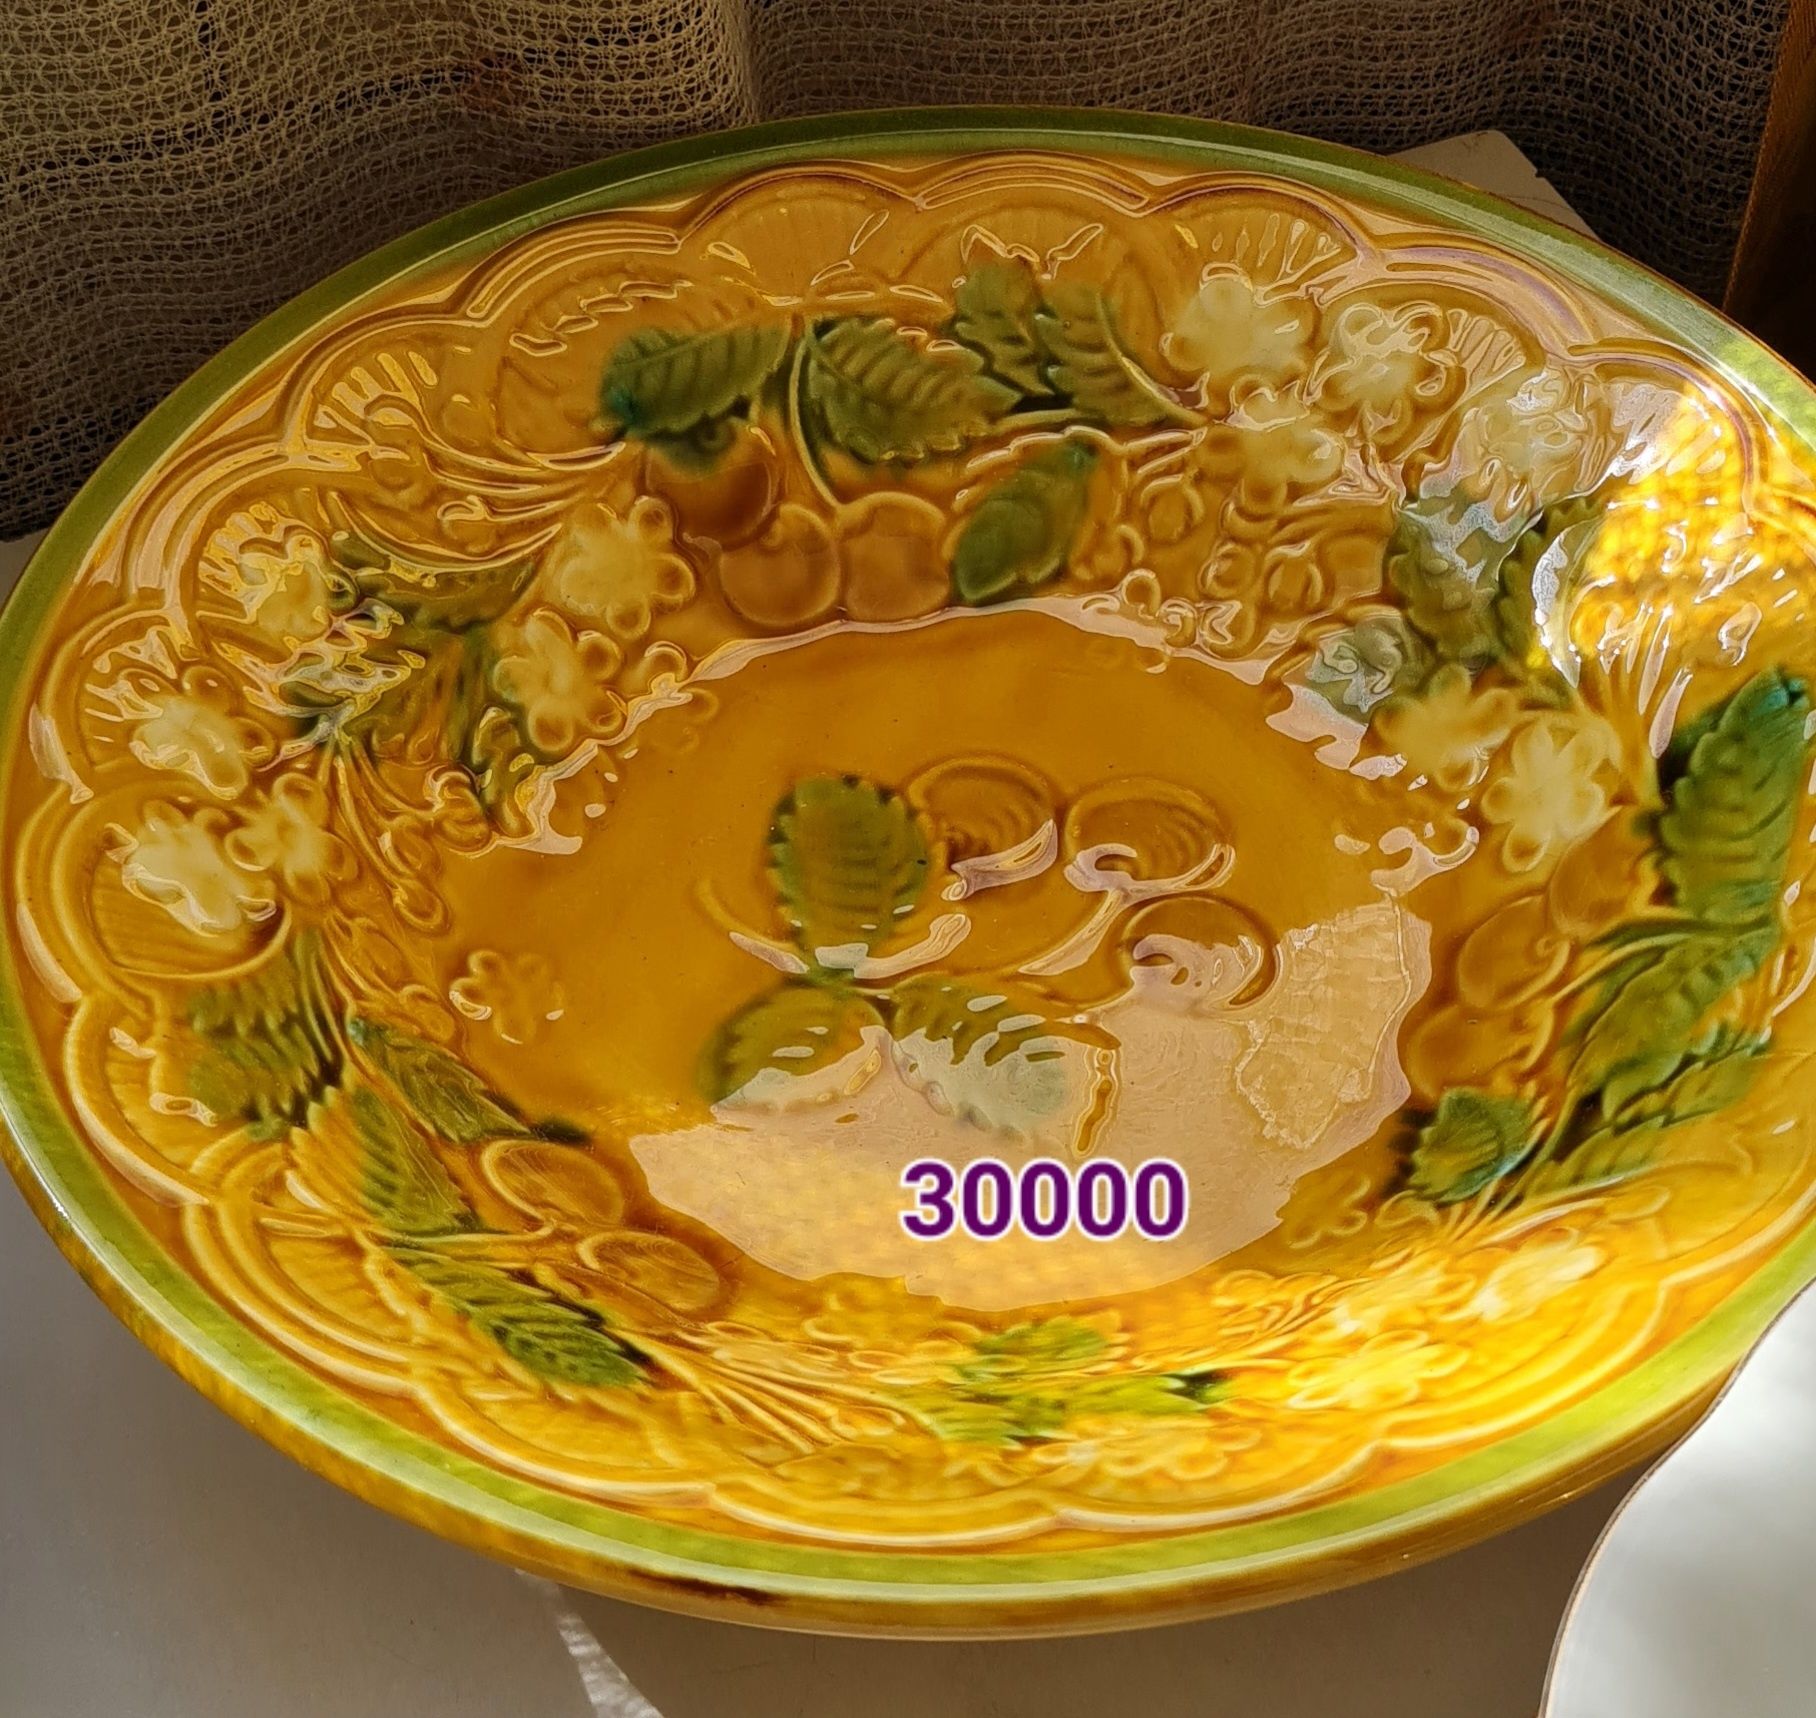 Срочно продам большие тарелки,цены указаны в фото карусели!